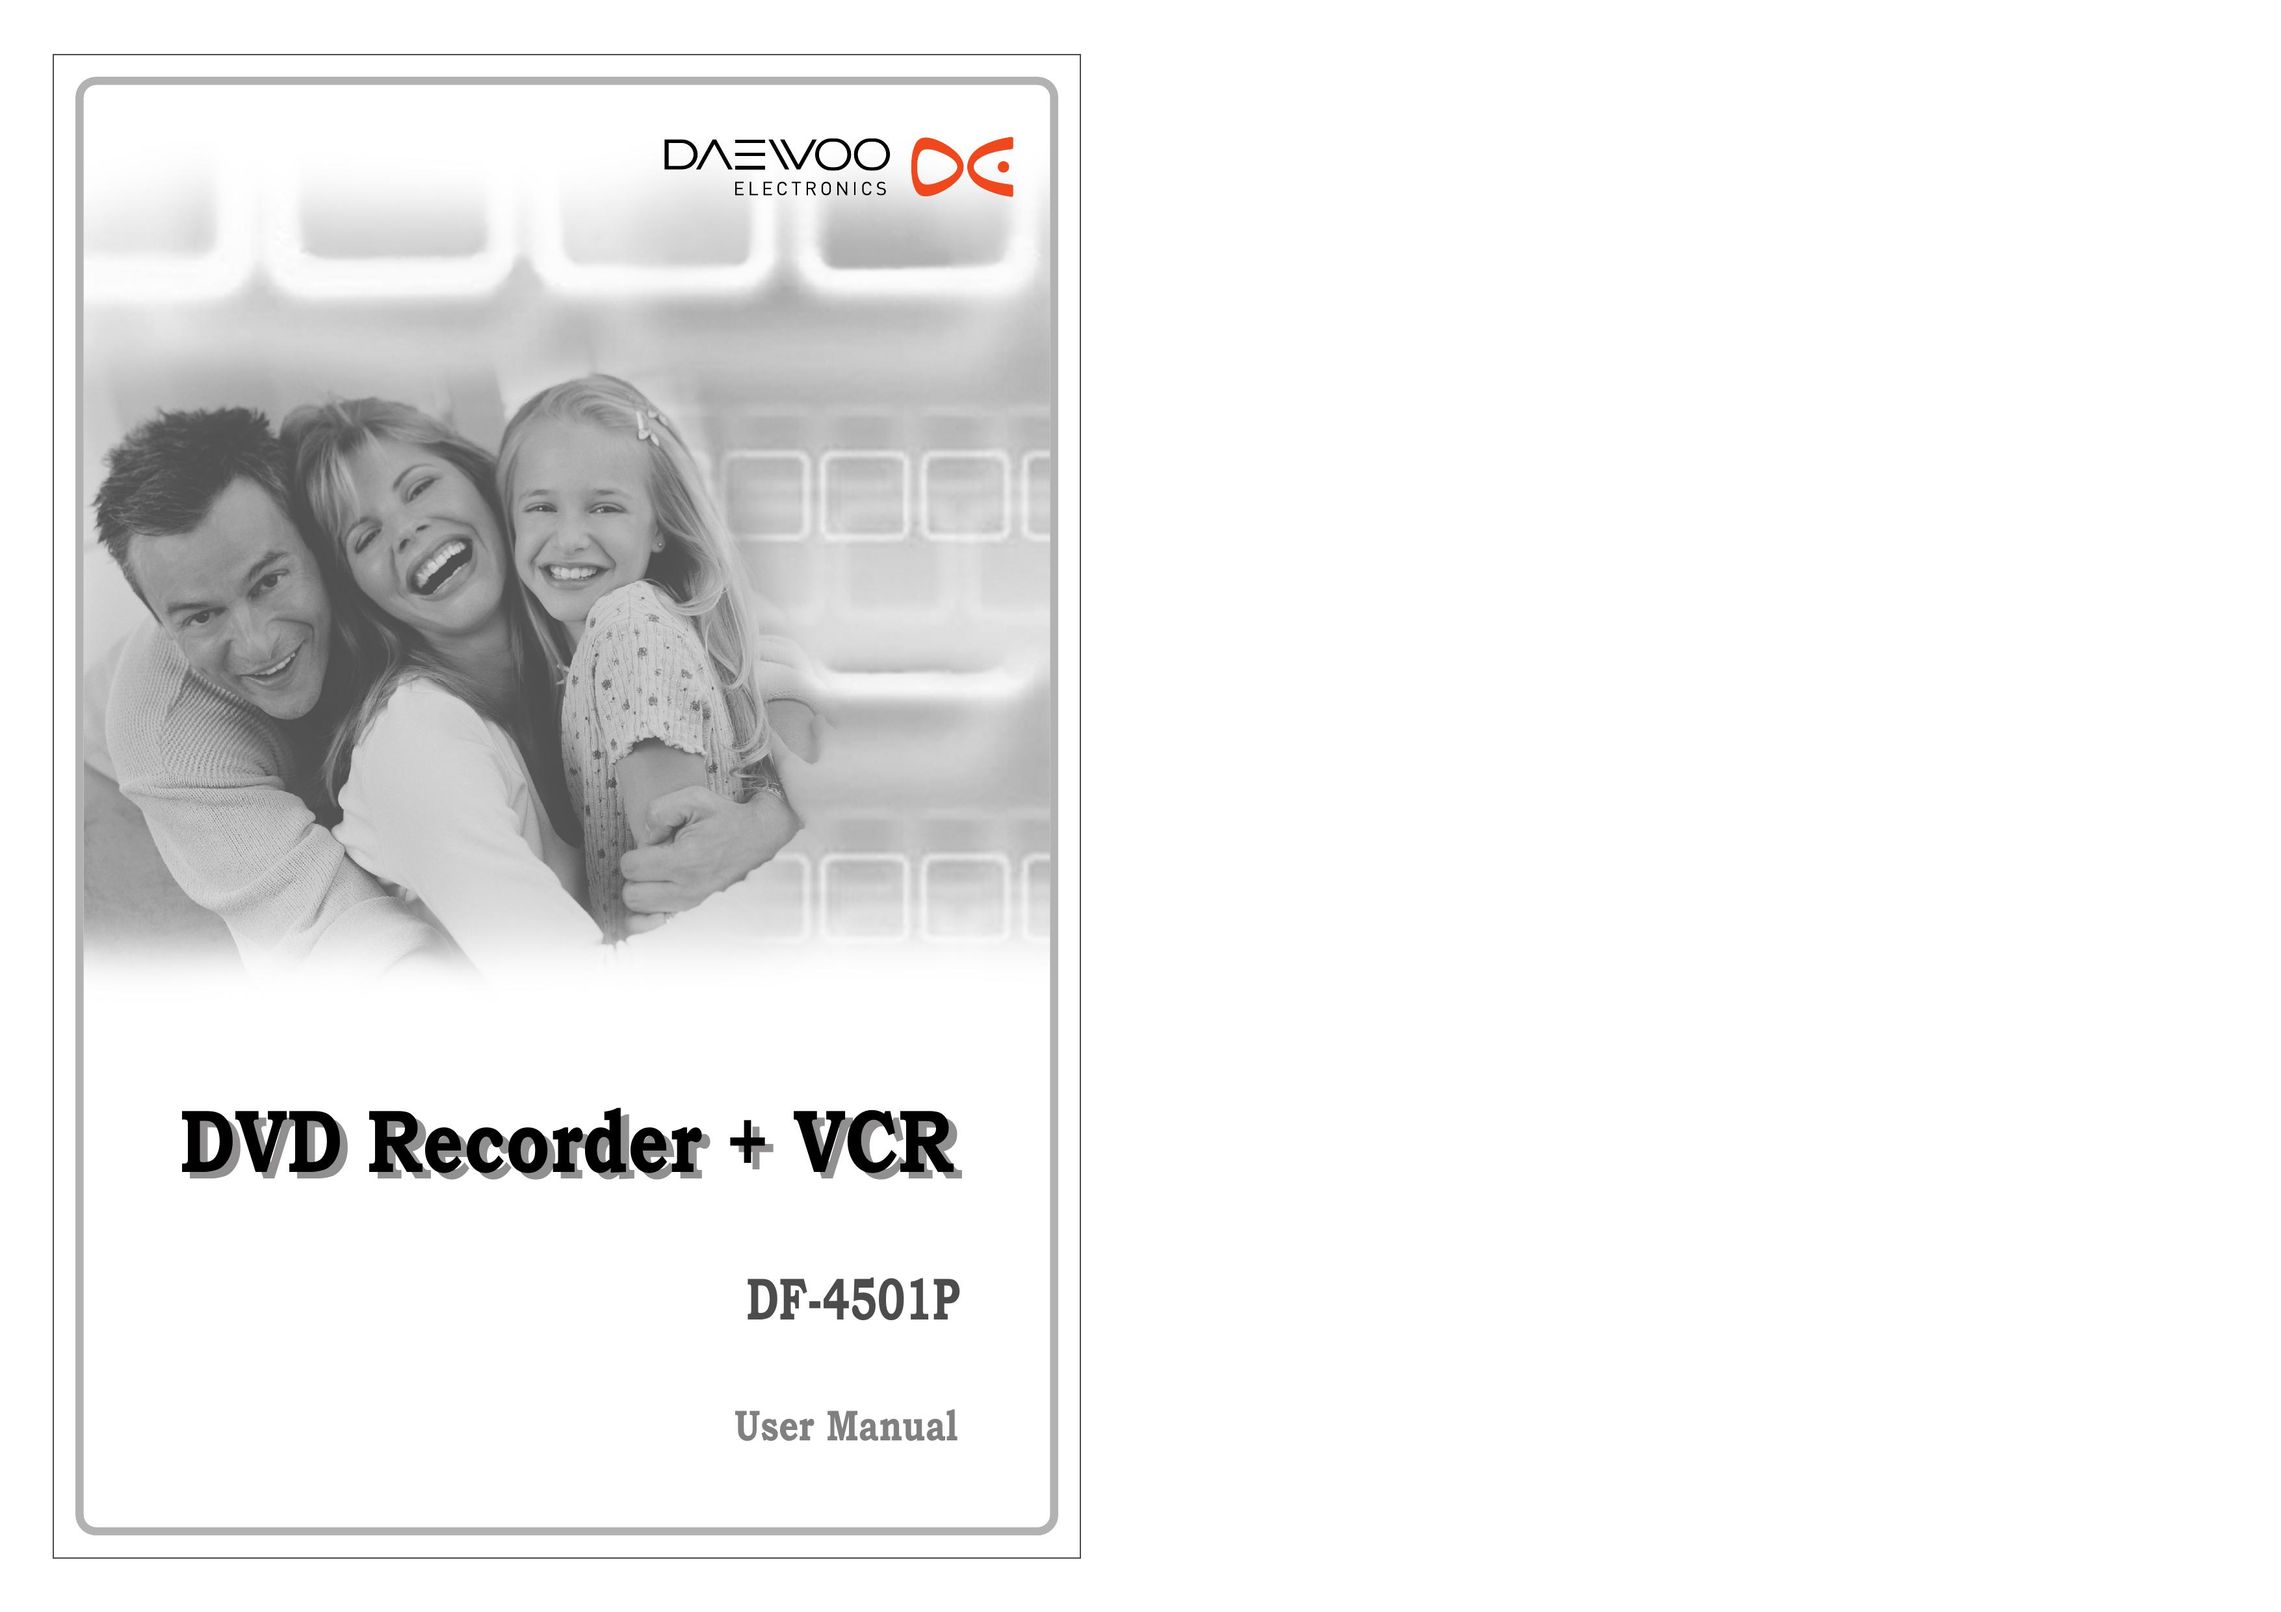 Daewoo DF-4501P DVD Recorder User Manual (Page 1)